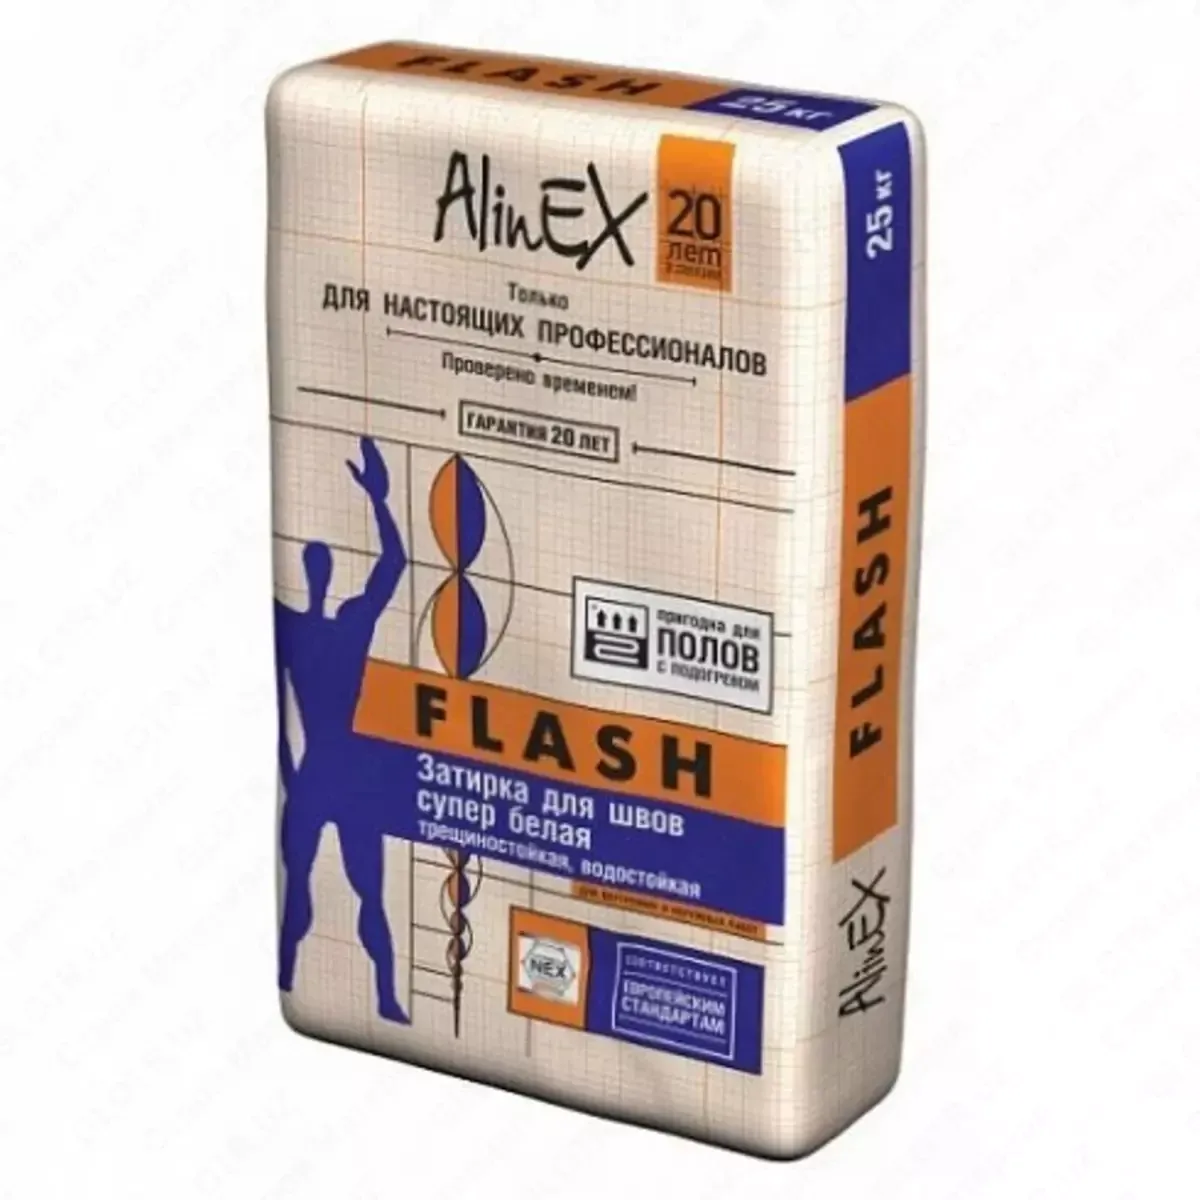 Bo'g'inlar uchun grout Fuga Flash 25 kg ALINEX#1